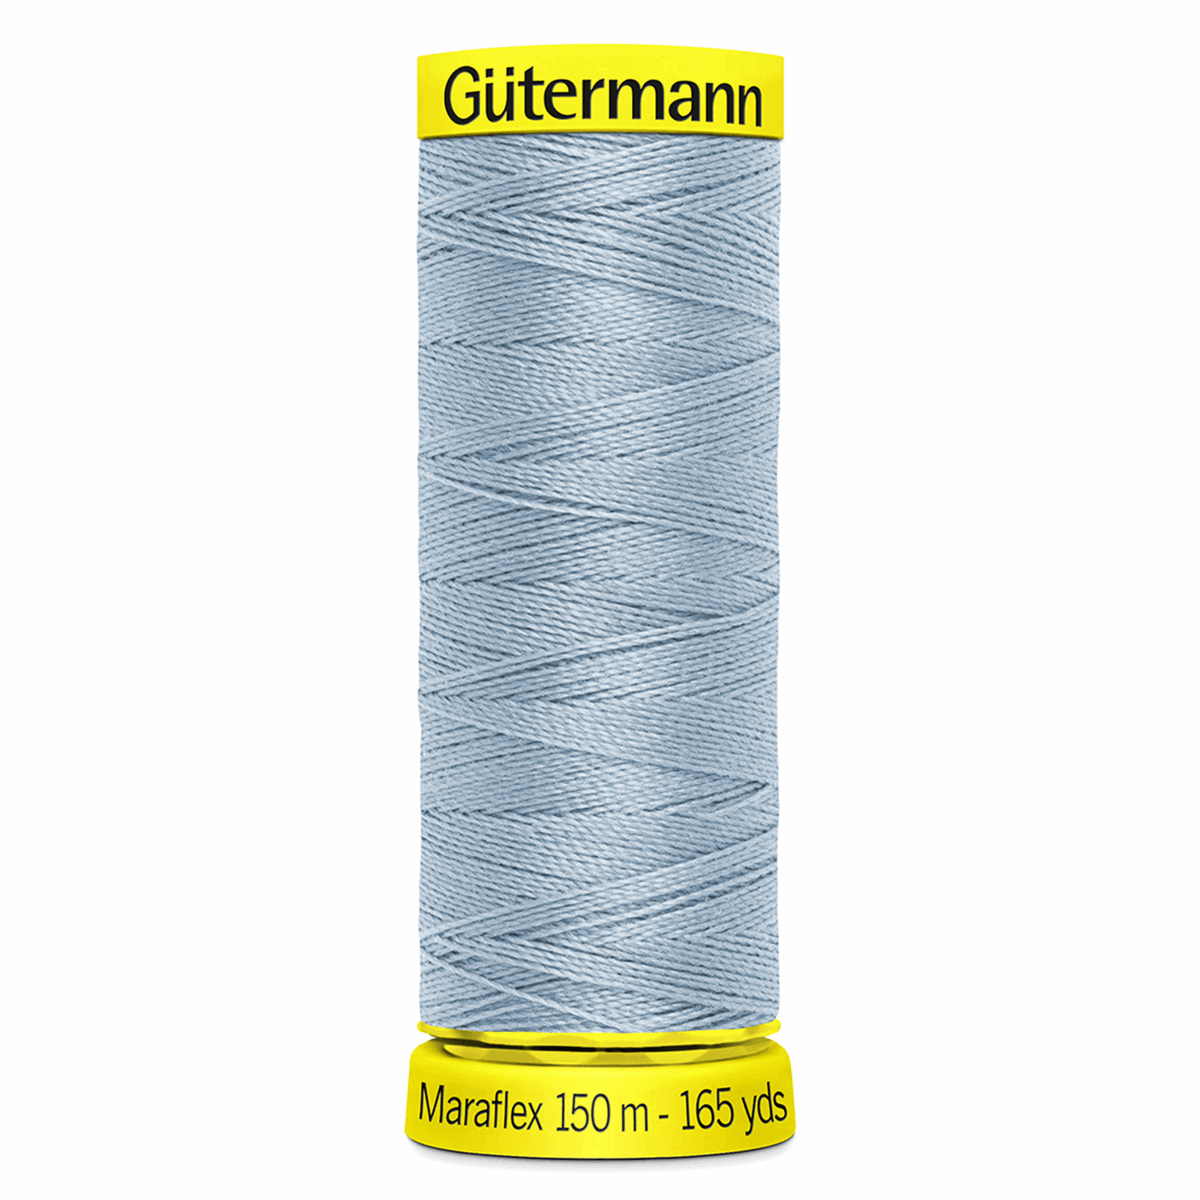 Gutermann Maraflex Elastic Sewing Thread 150m Powder Blue 75